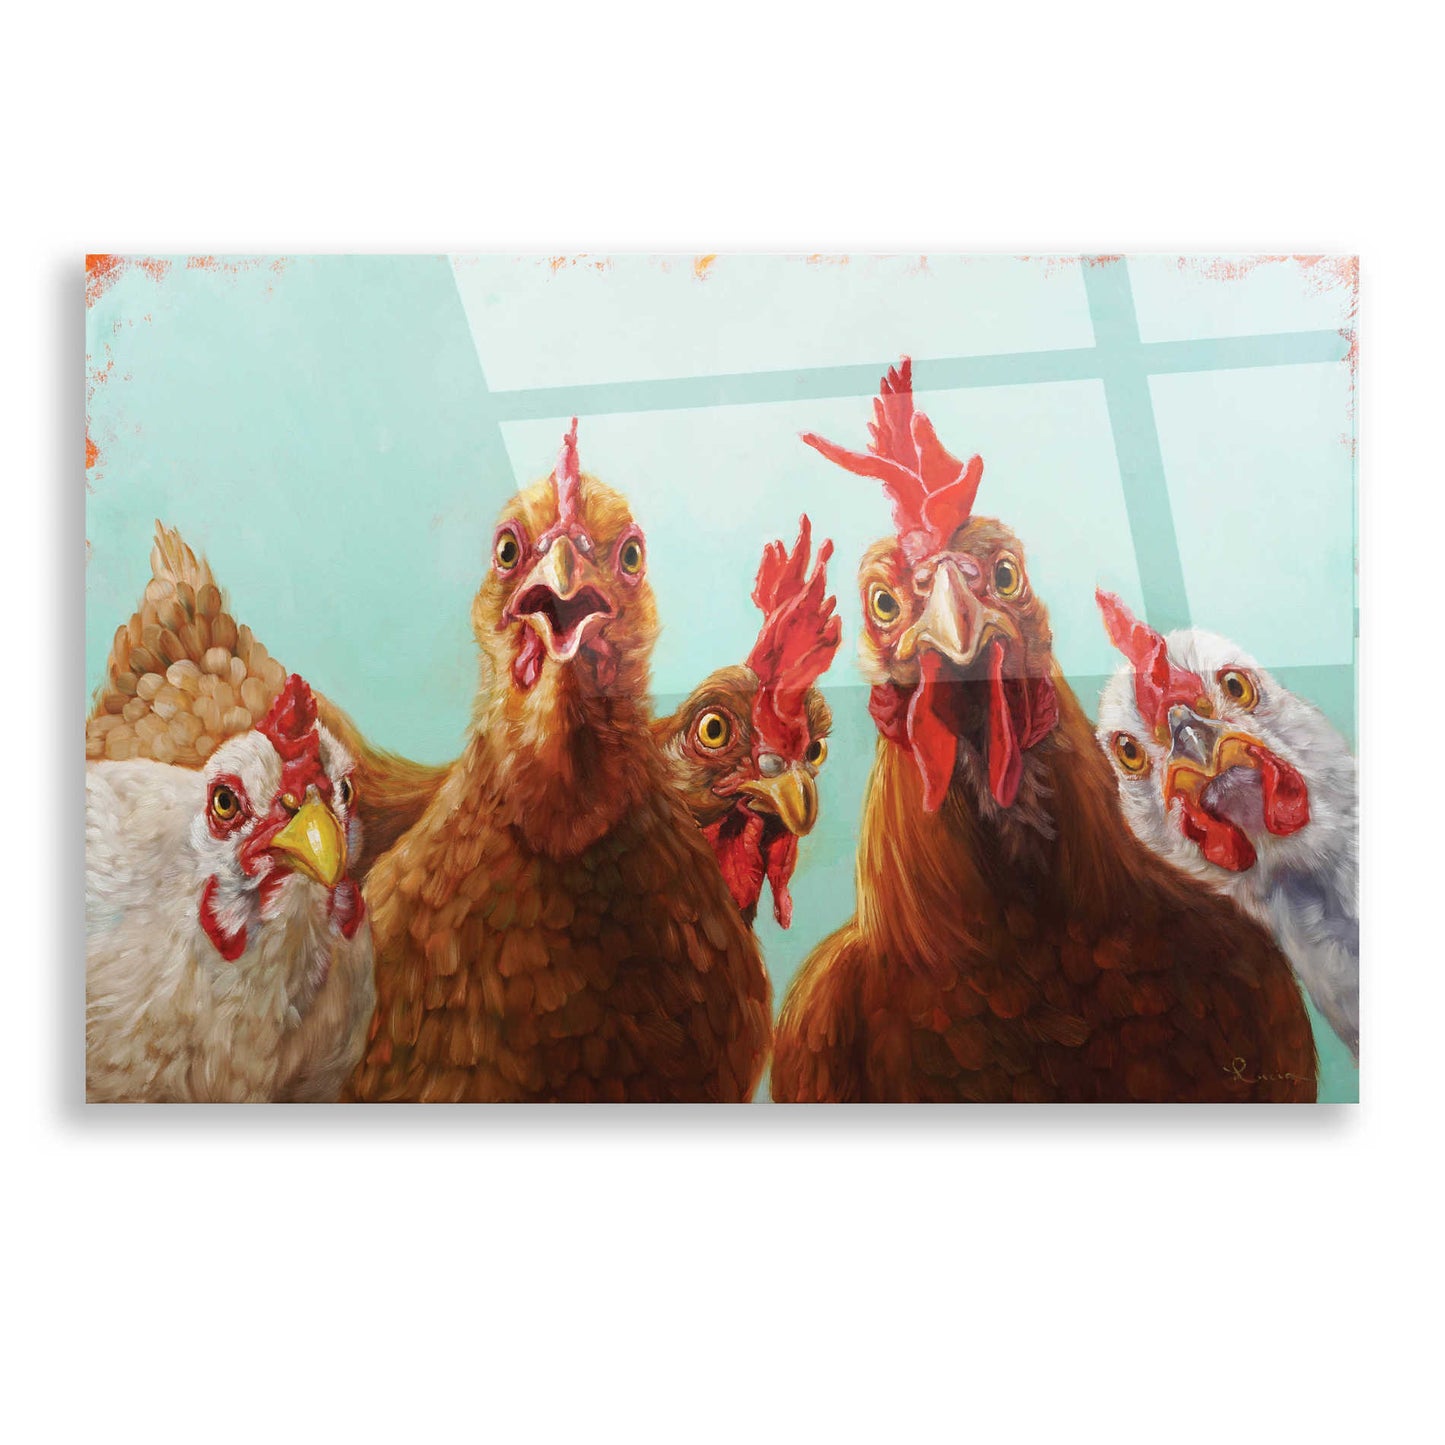 Epic Art 'Chicken for Dinner' by Lucia Heffernan, Acrylic Glass Wall Art,16x12